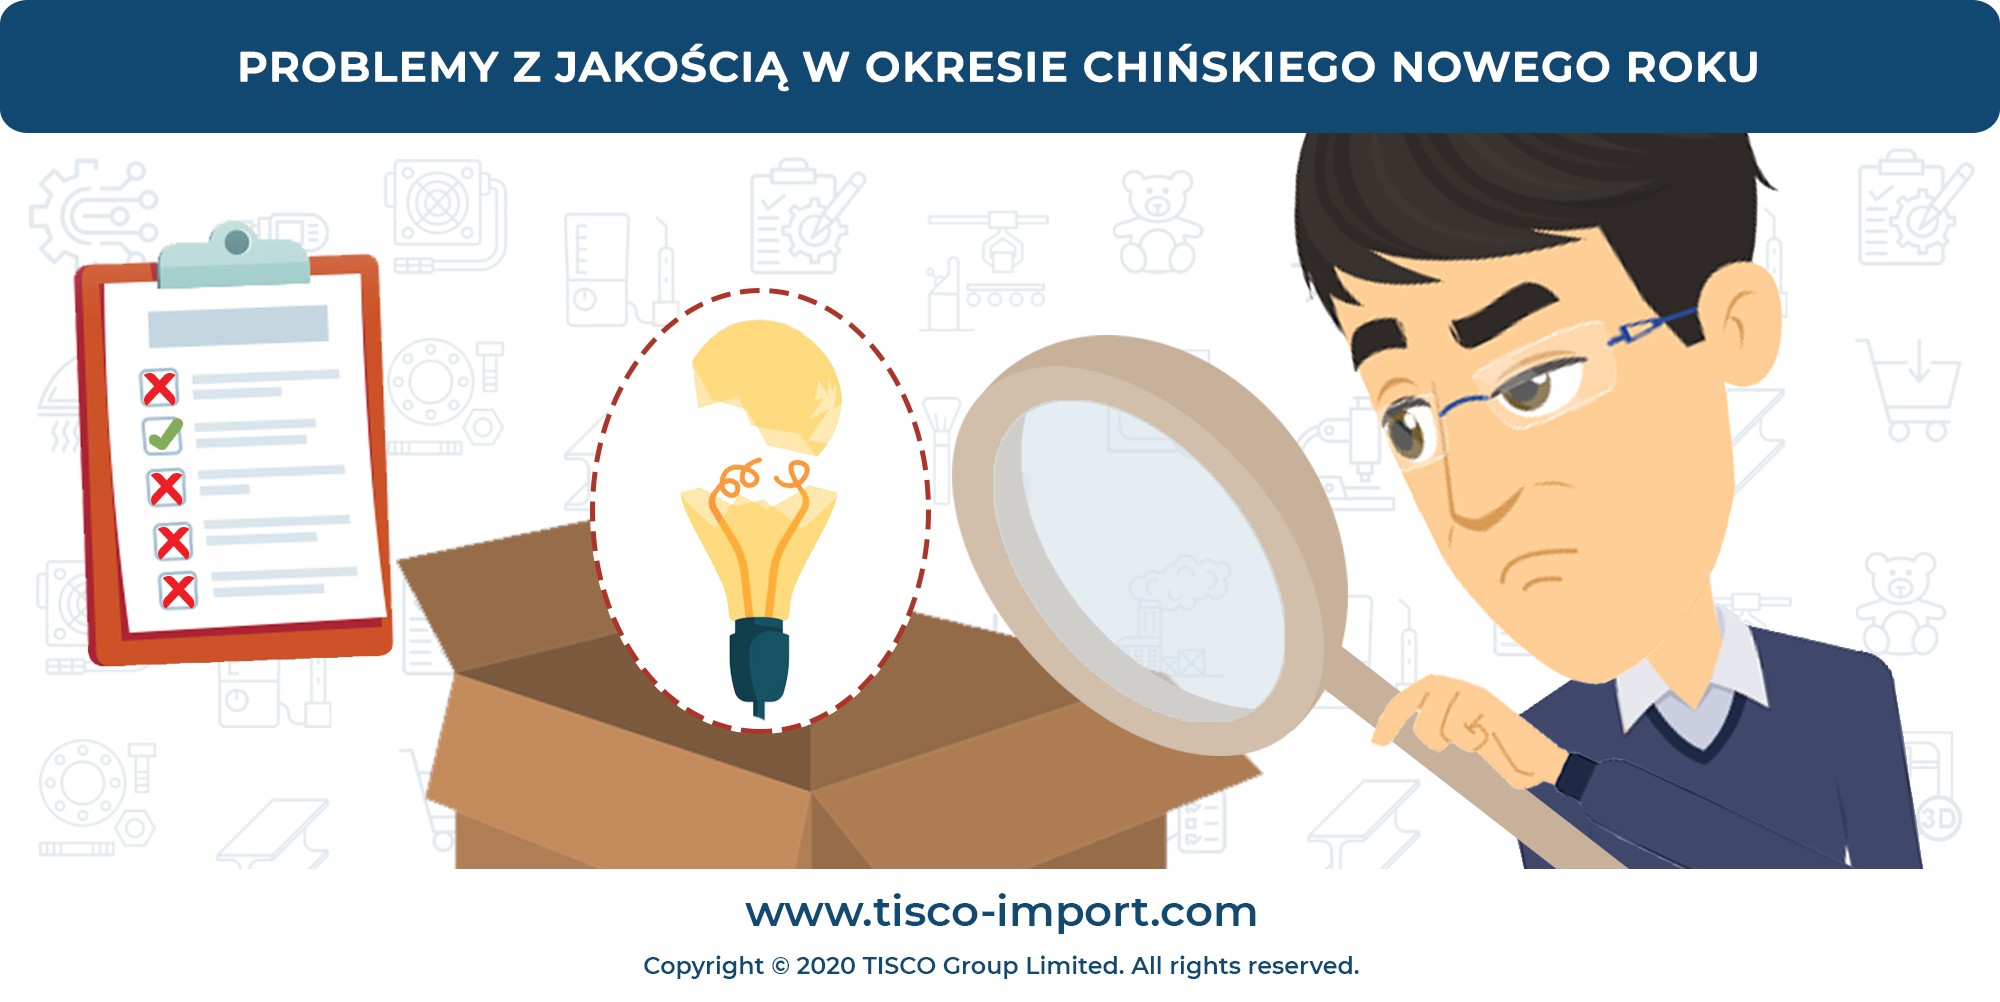 Chiński Nowy Rok, Tisco group limited, problemy z jakością, import z chin, kontrola jakości